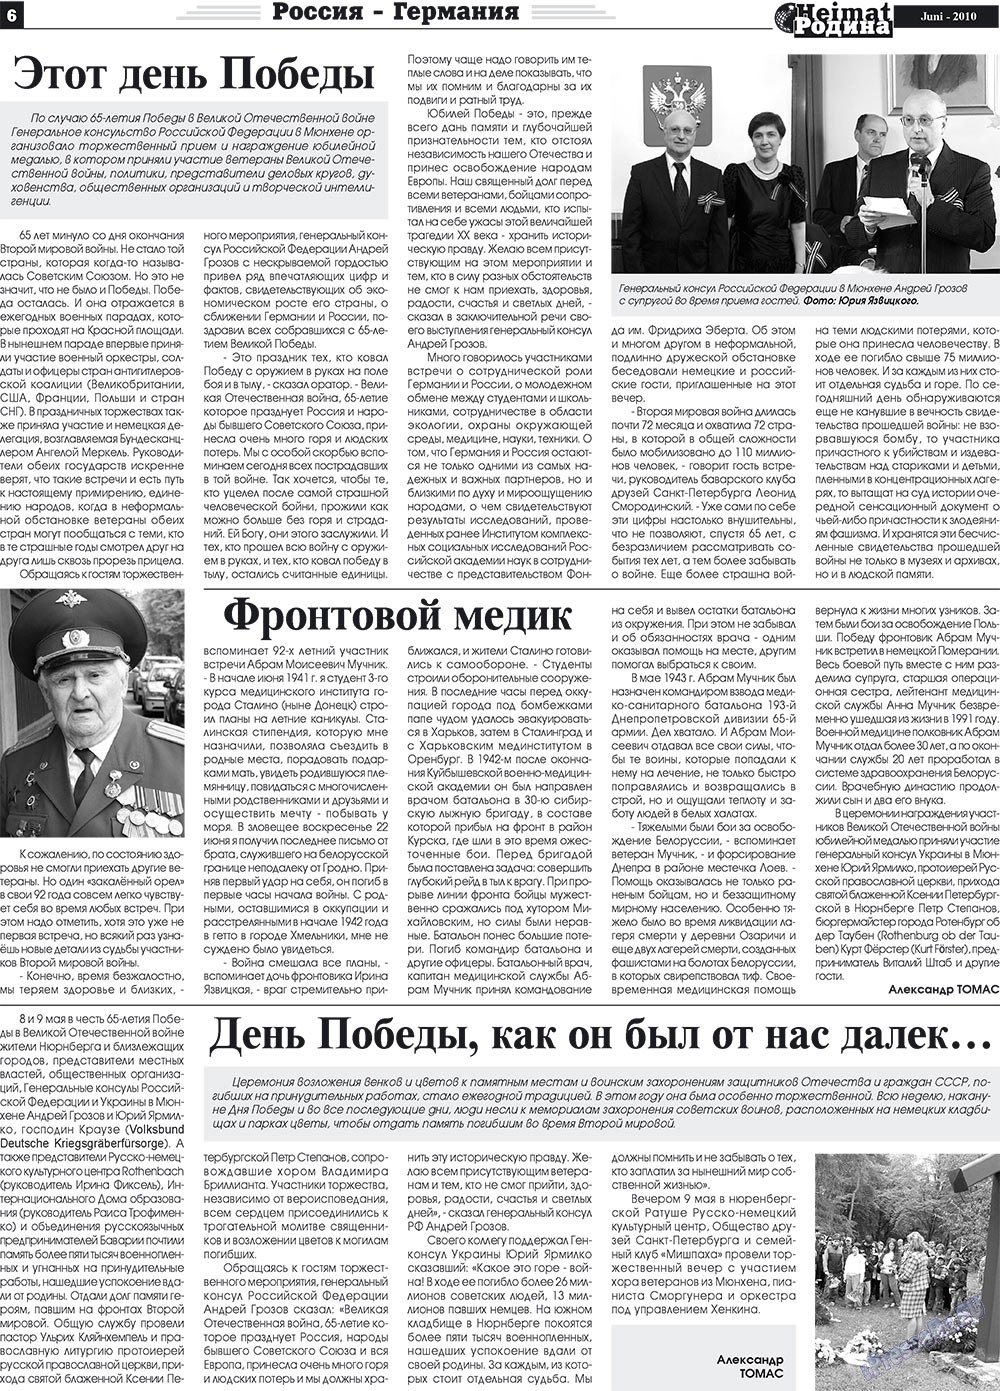 Heimat-Родина (газета). 2010 год, номер 6, стр. 6